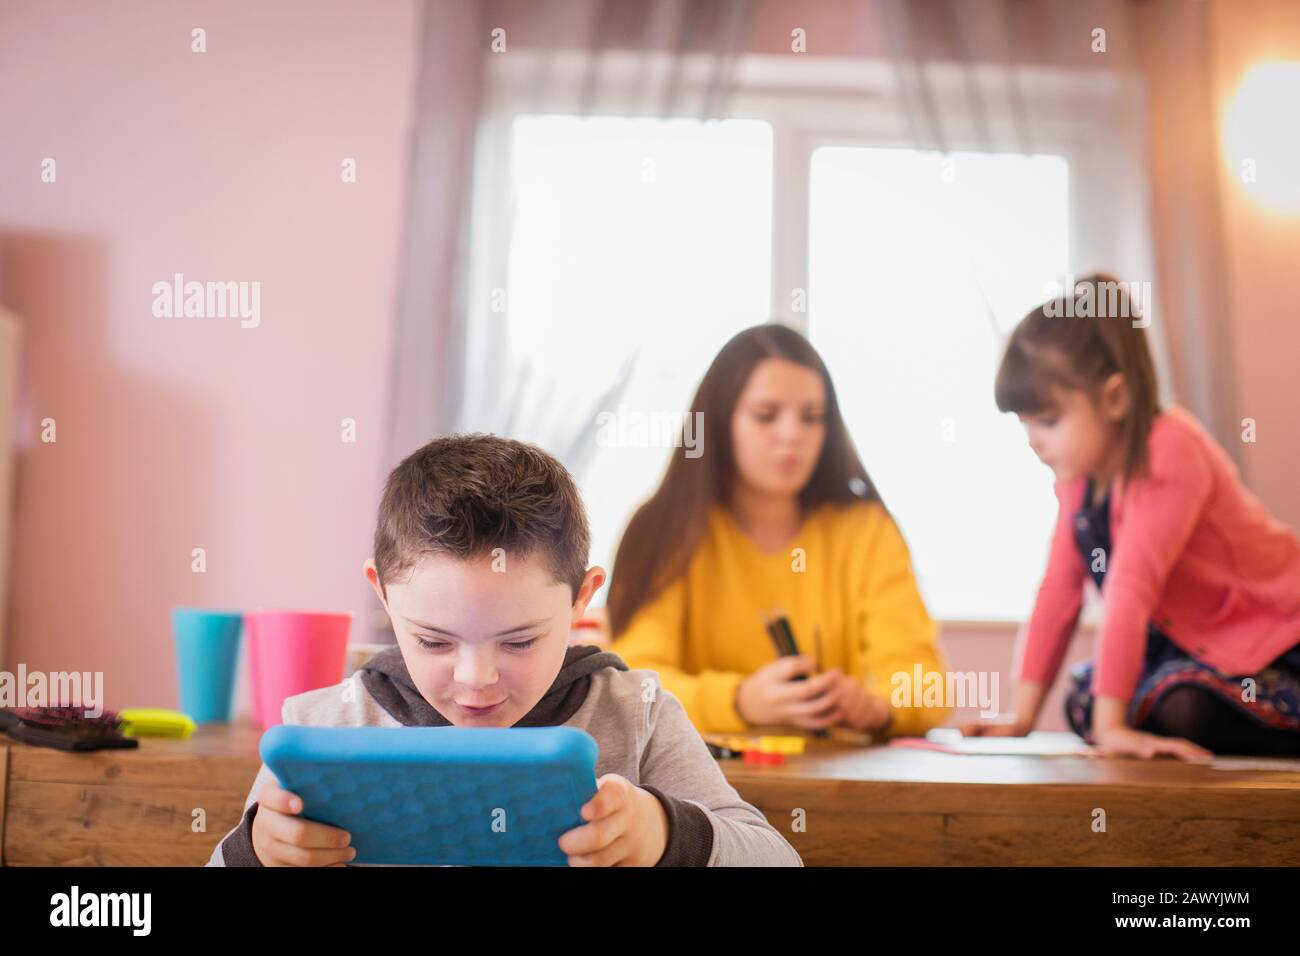 Junge mit Down-Syndrom mit digitalem Tablet am Esstisch Stockfoto